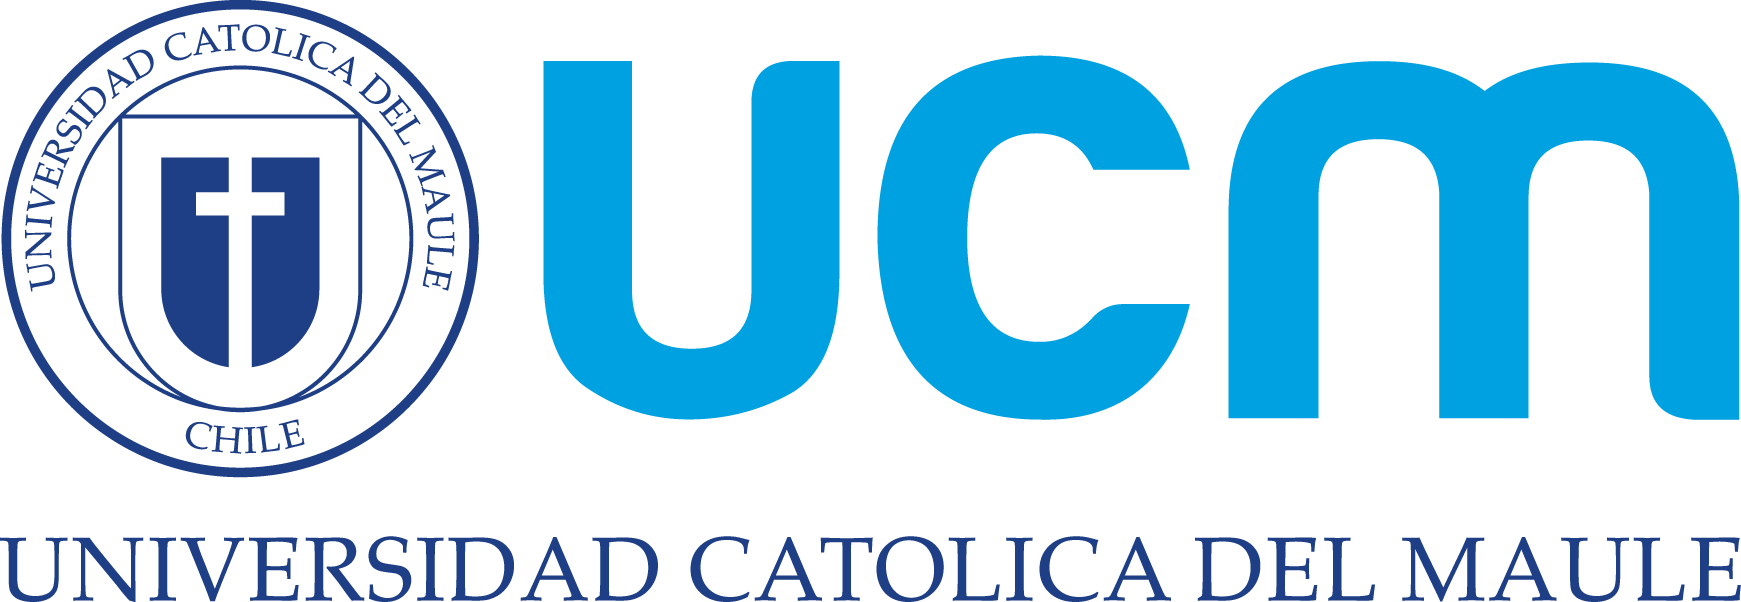 logo ucm - horizontal